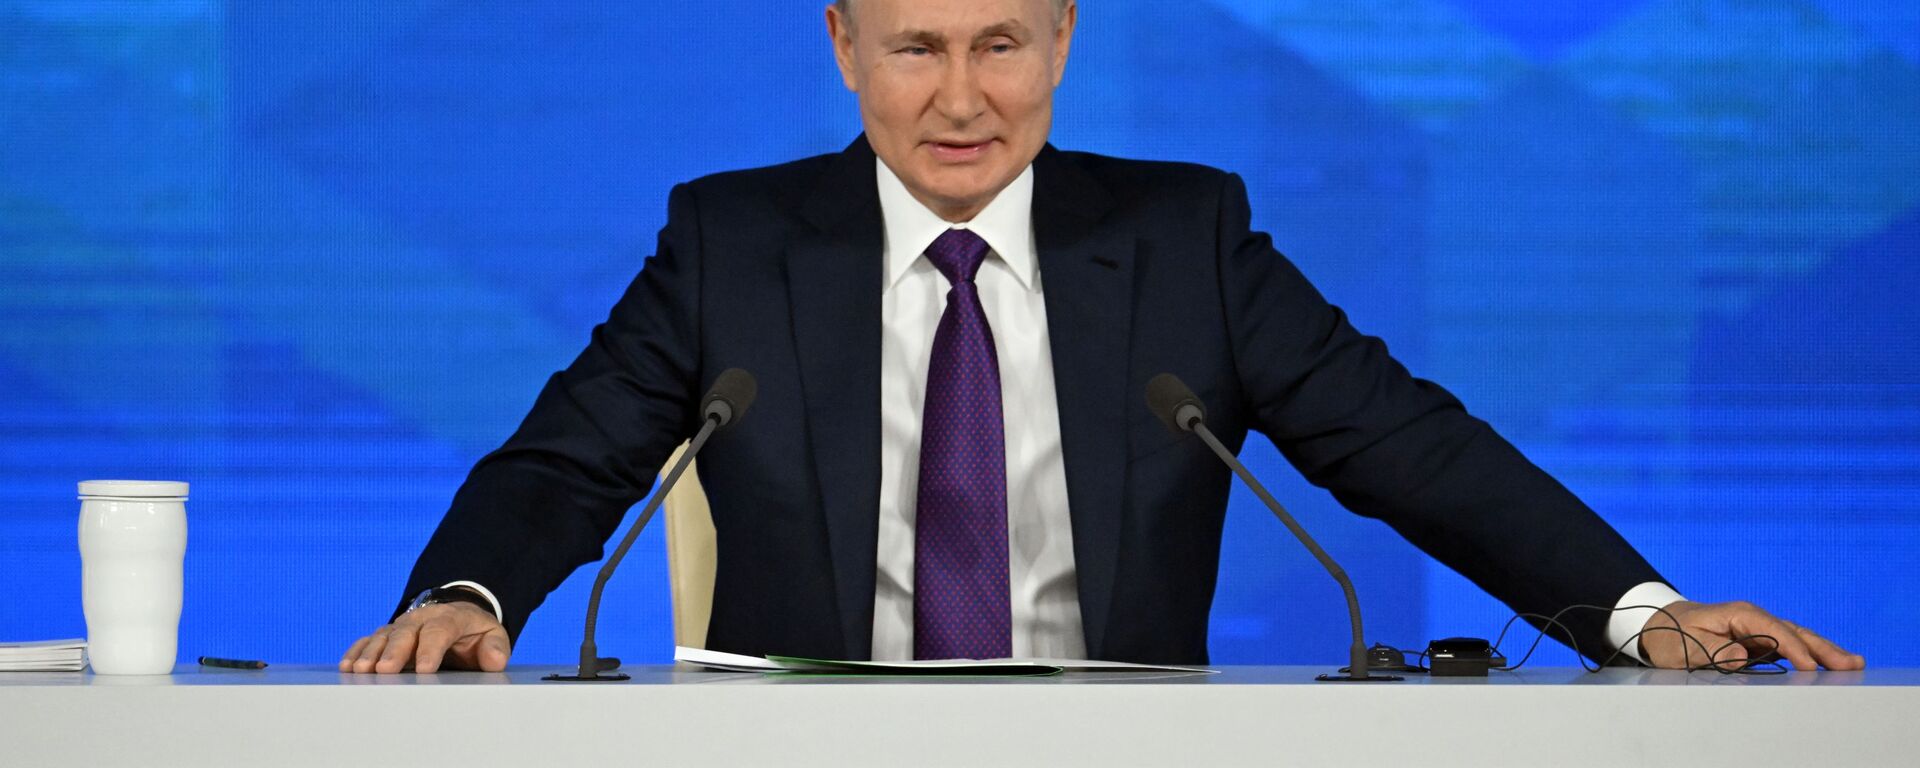 ロシアのウラジーミル・プーチン大統領 - Sputnik 日本, 1920, 23.12.2021